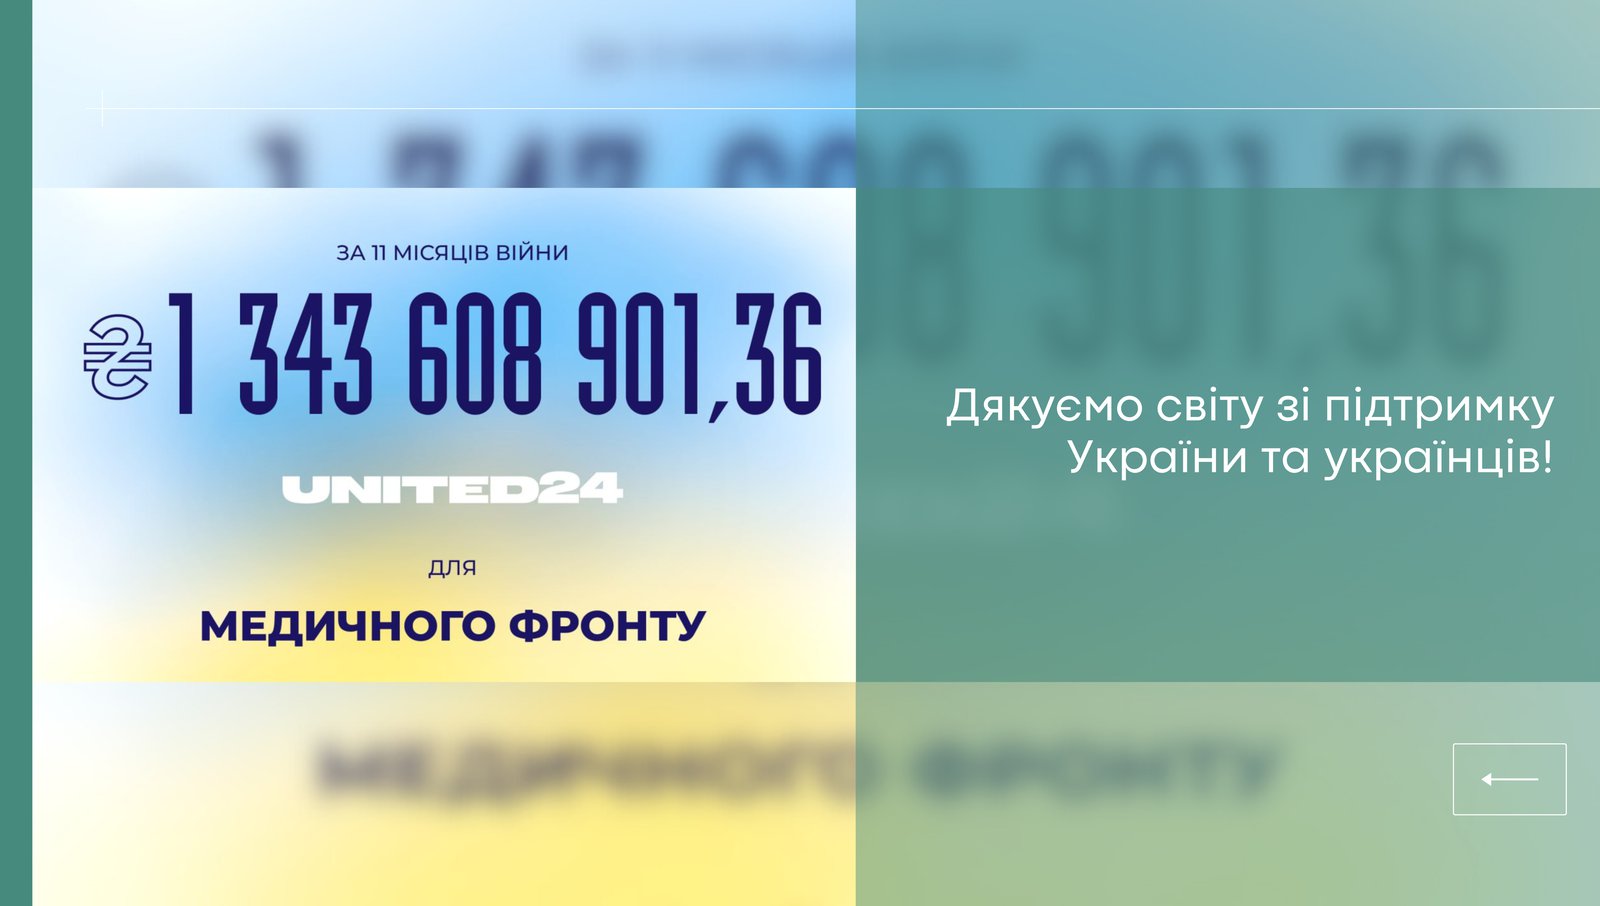 United24 стала вікном для підтримки України людьми з усього світу.  За 11 місяців було зібрано 1 343 608 901,36 грн лише для напряму «Медична допомога»!